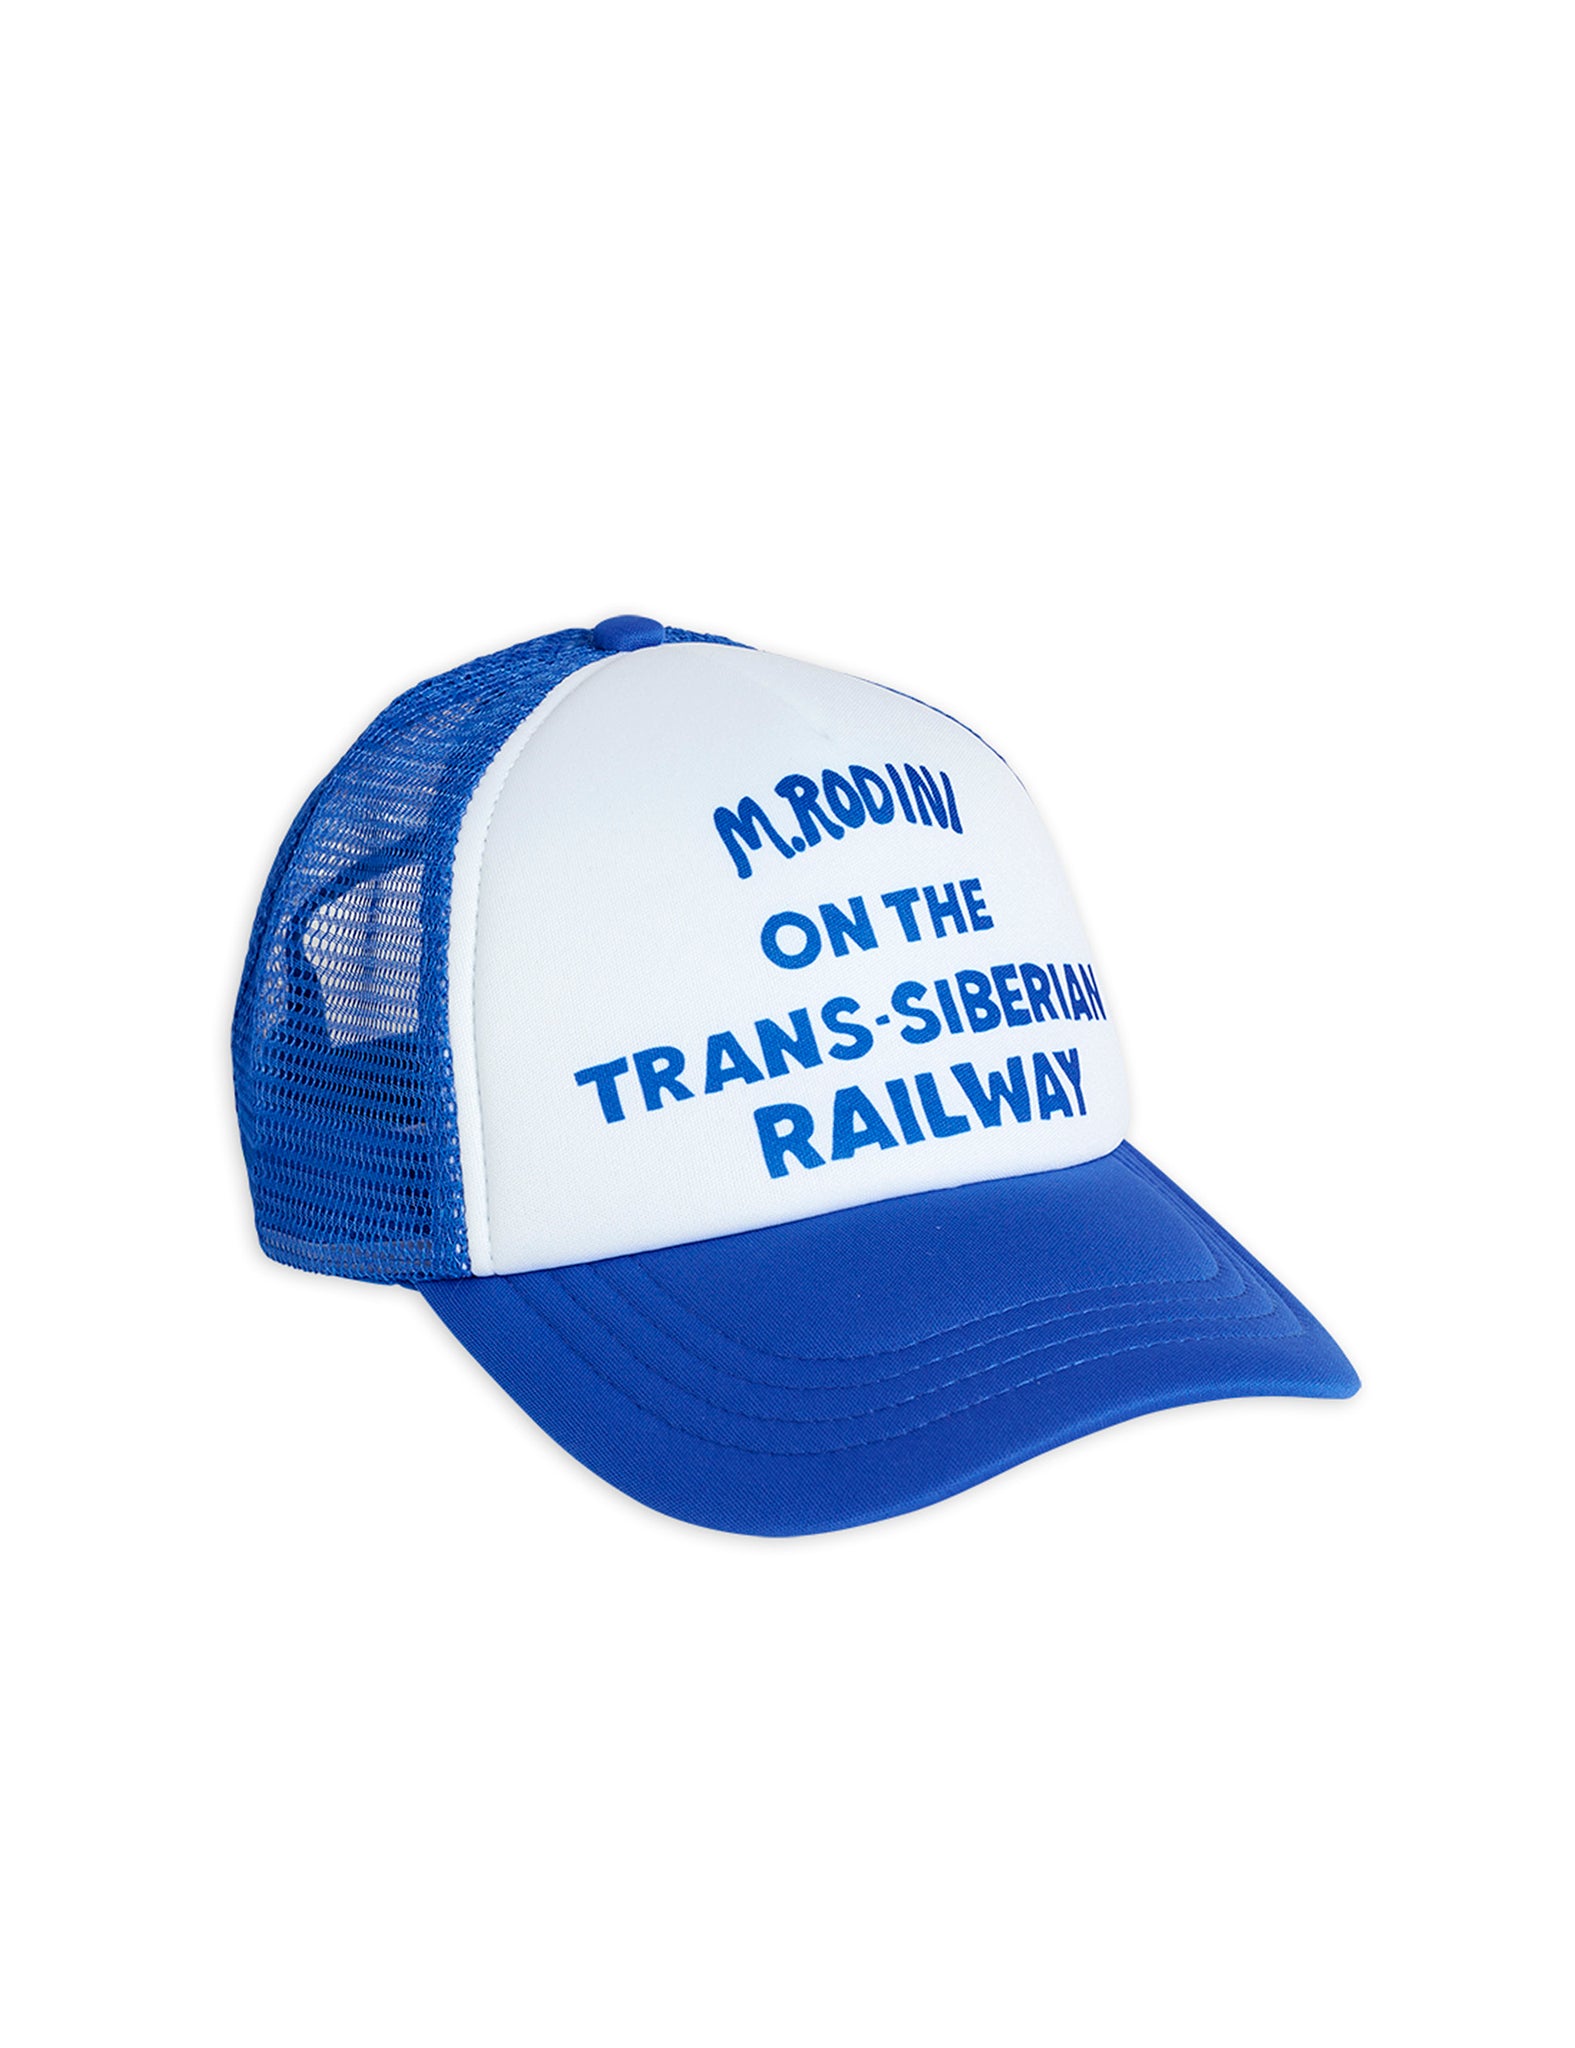 Trucker cap,Blue - Cémarose Canada